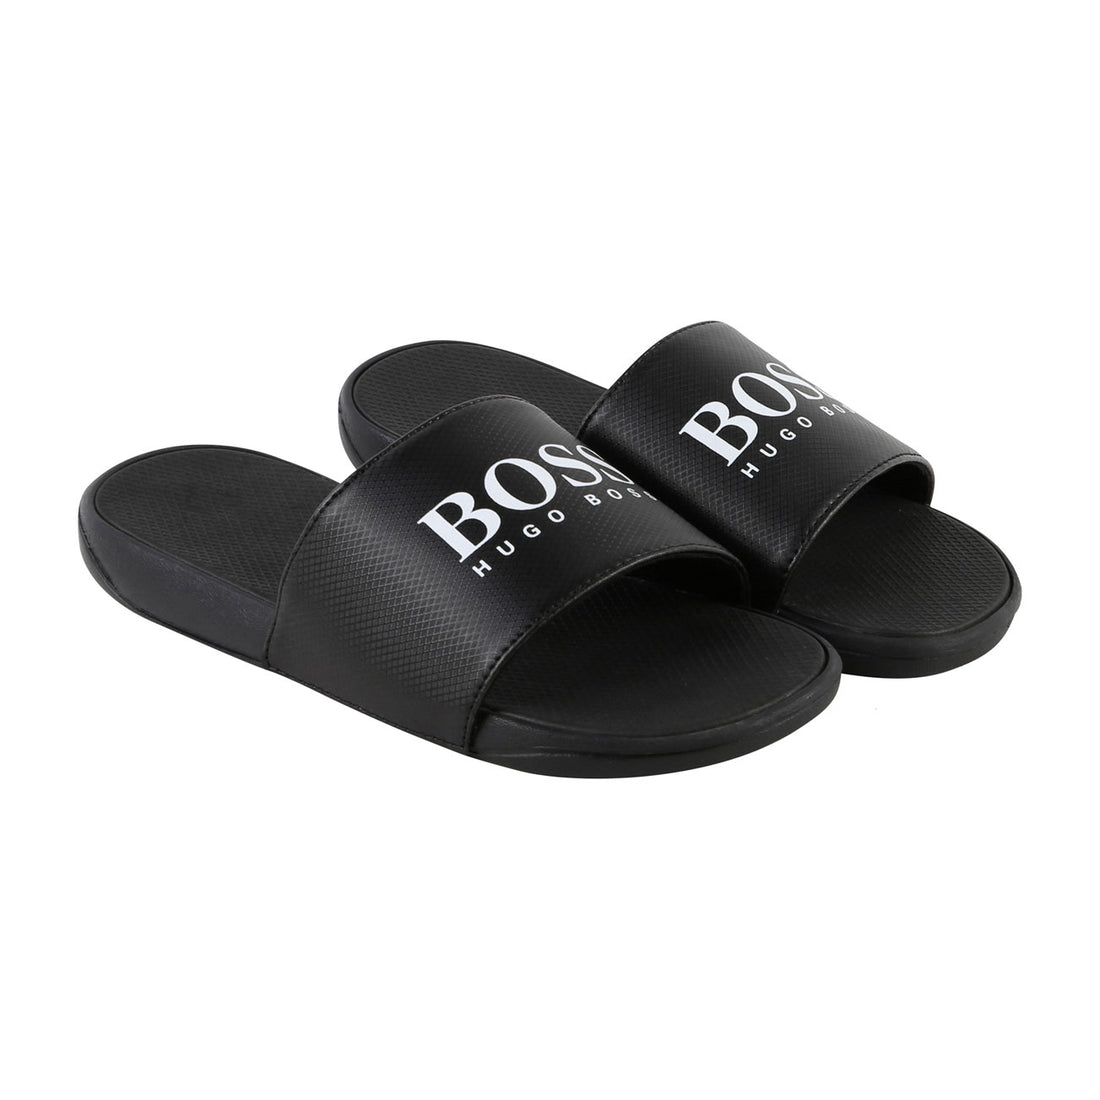 BOSS Hugo Boss Black Slides